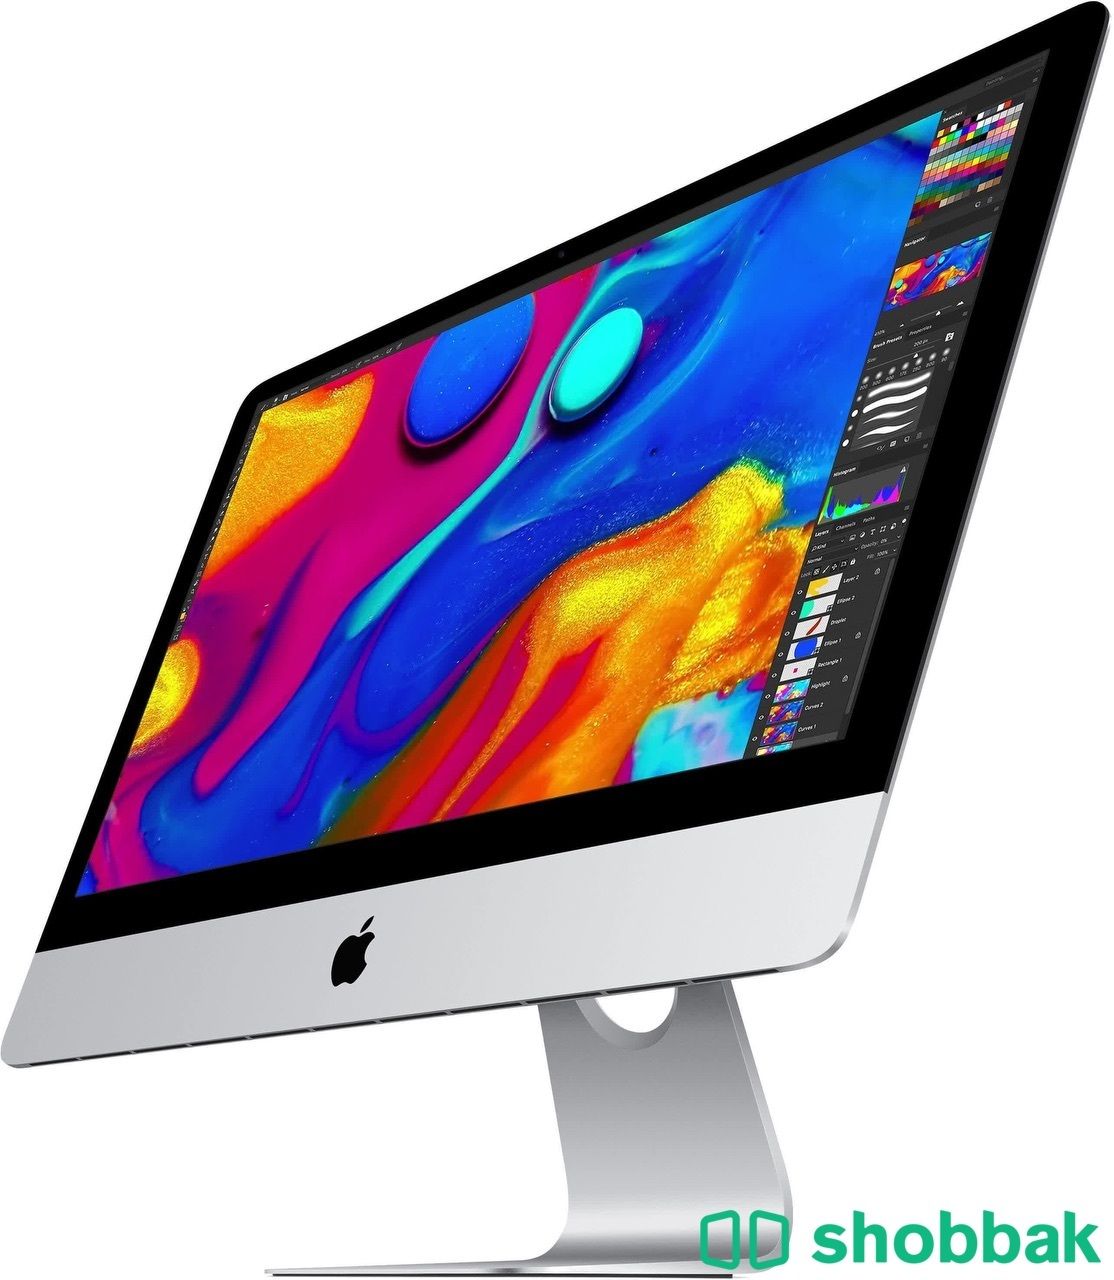 iMac 2019 5k - 1 TB اي ماك ابل  Shobbak Saudi Arabia